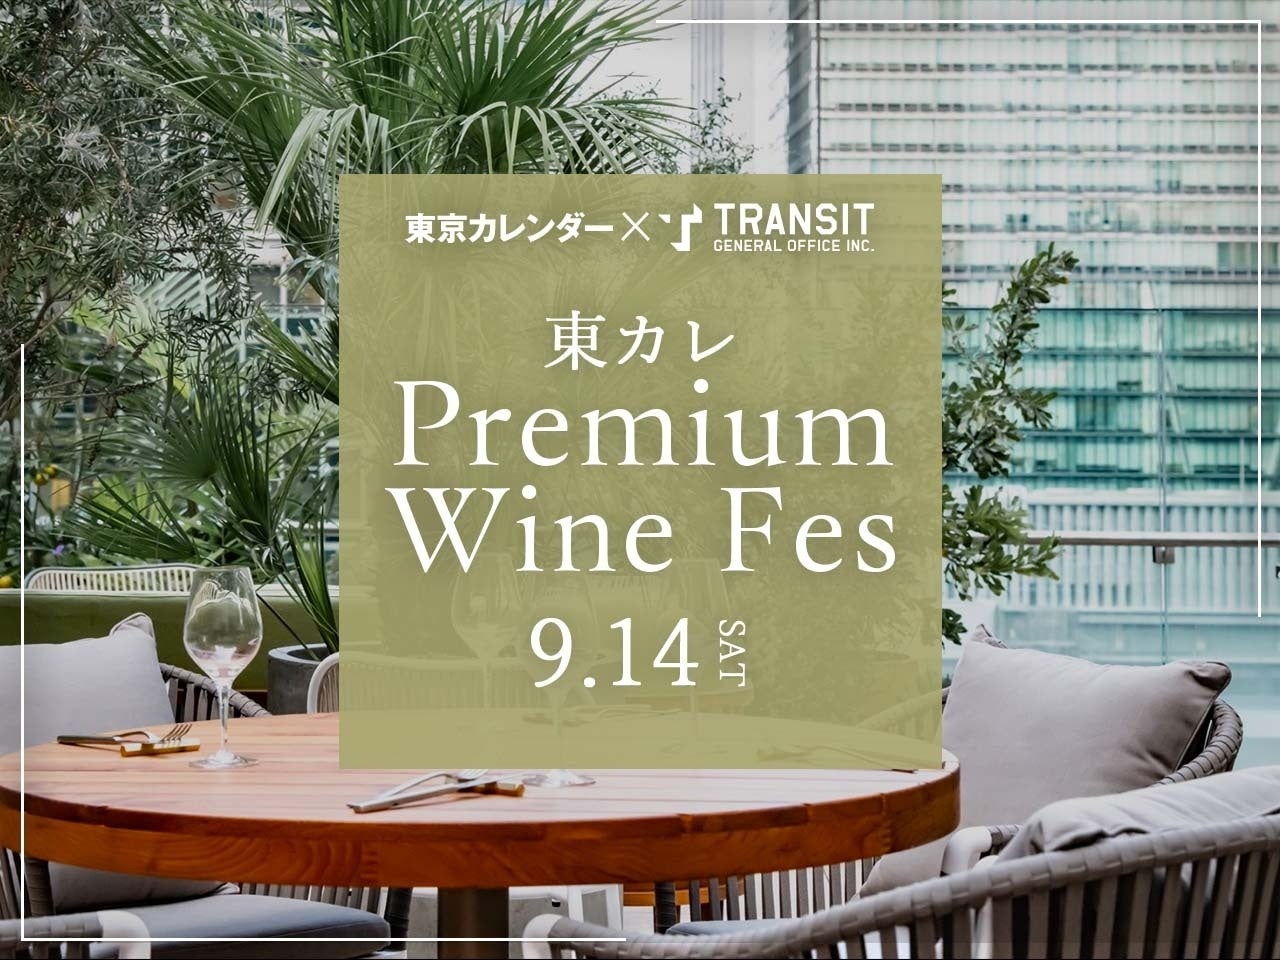 トランジットが最新のグルメ情報誌「東京カレンダー」とイベント『東カレ PREMIUM WINE FES』を丸の内〈THE UPPER〉で開催。